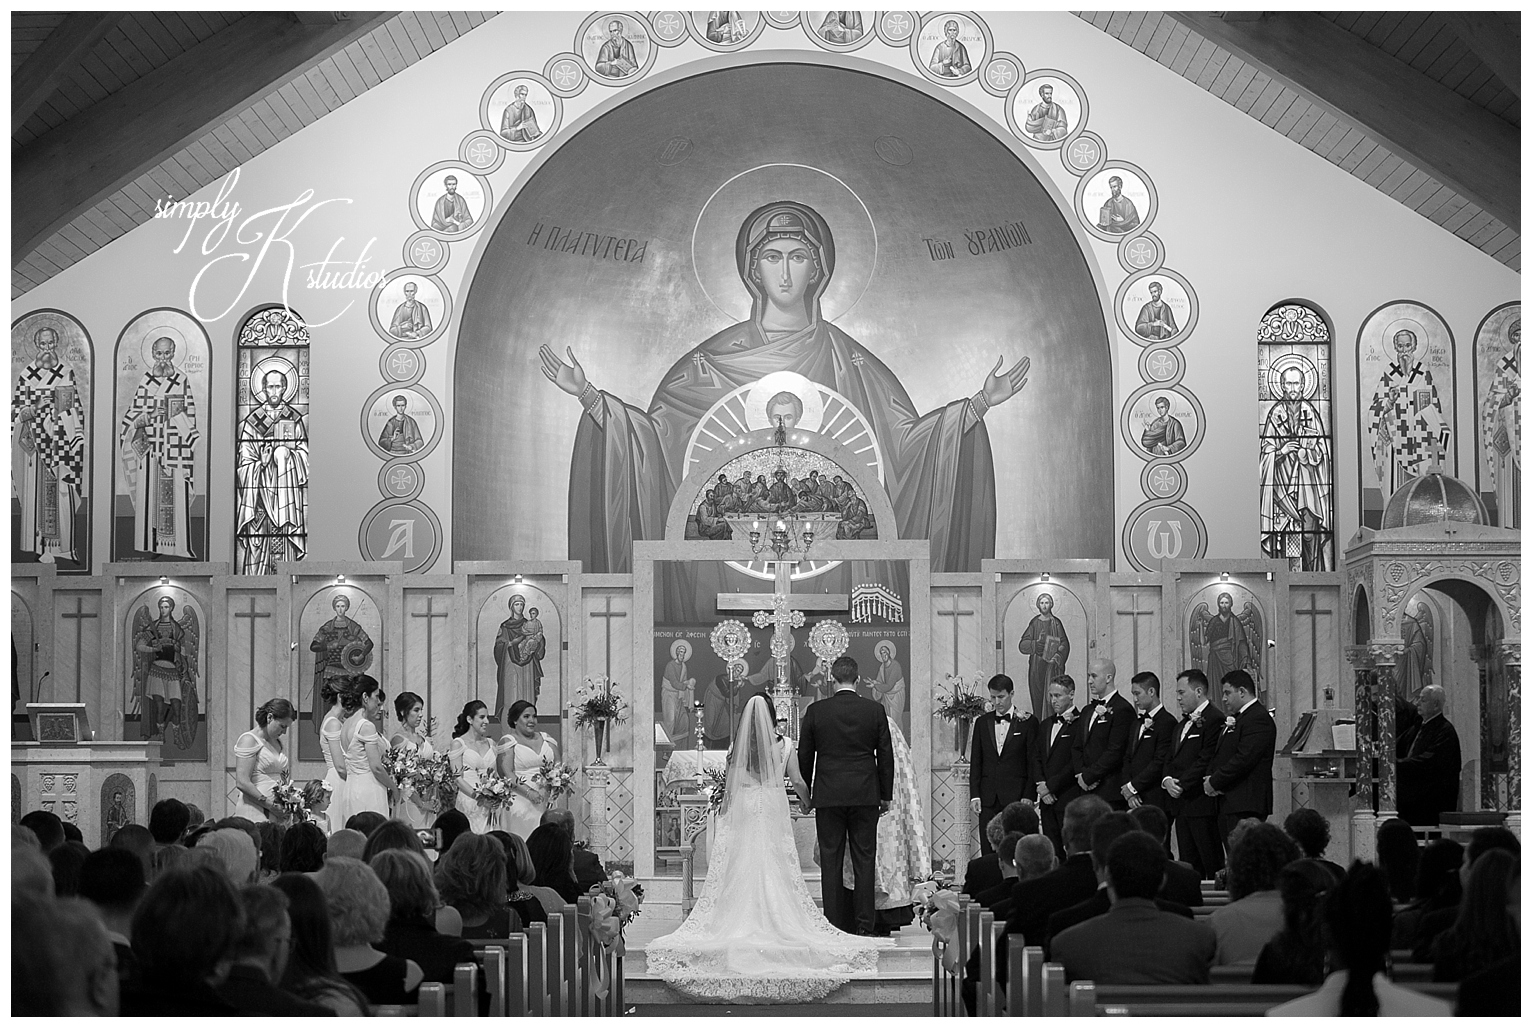 Wedding Ceremony in a Church.jpg